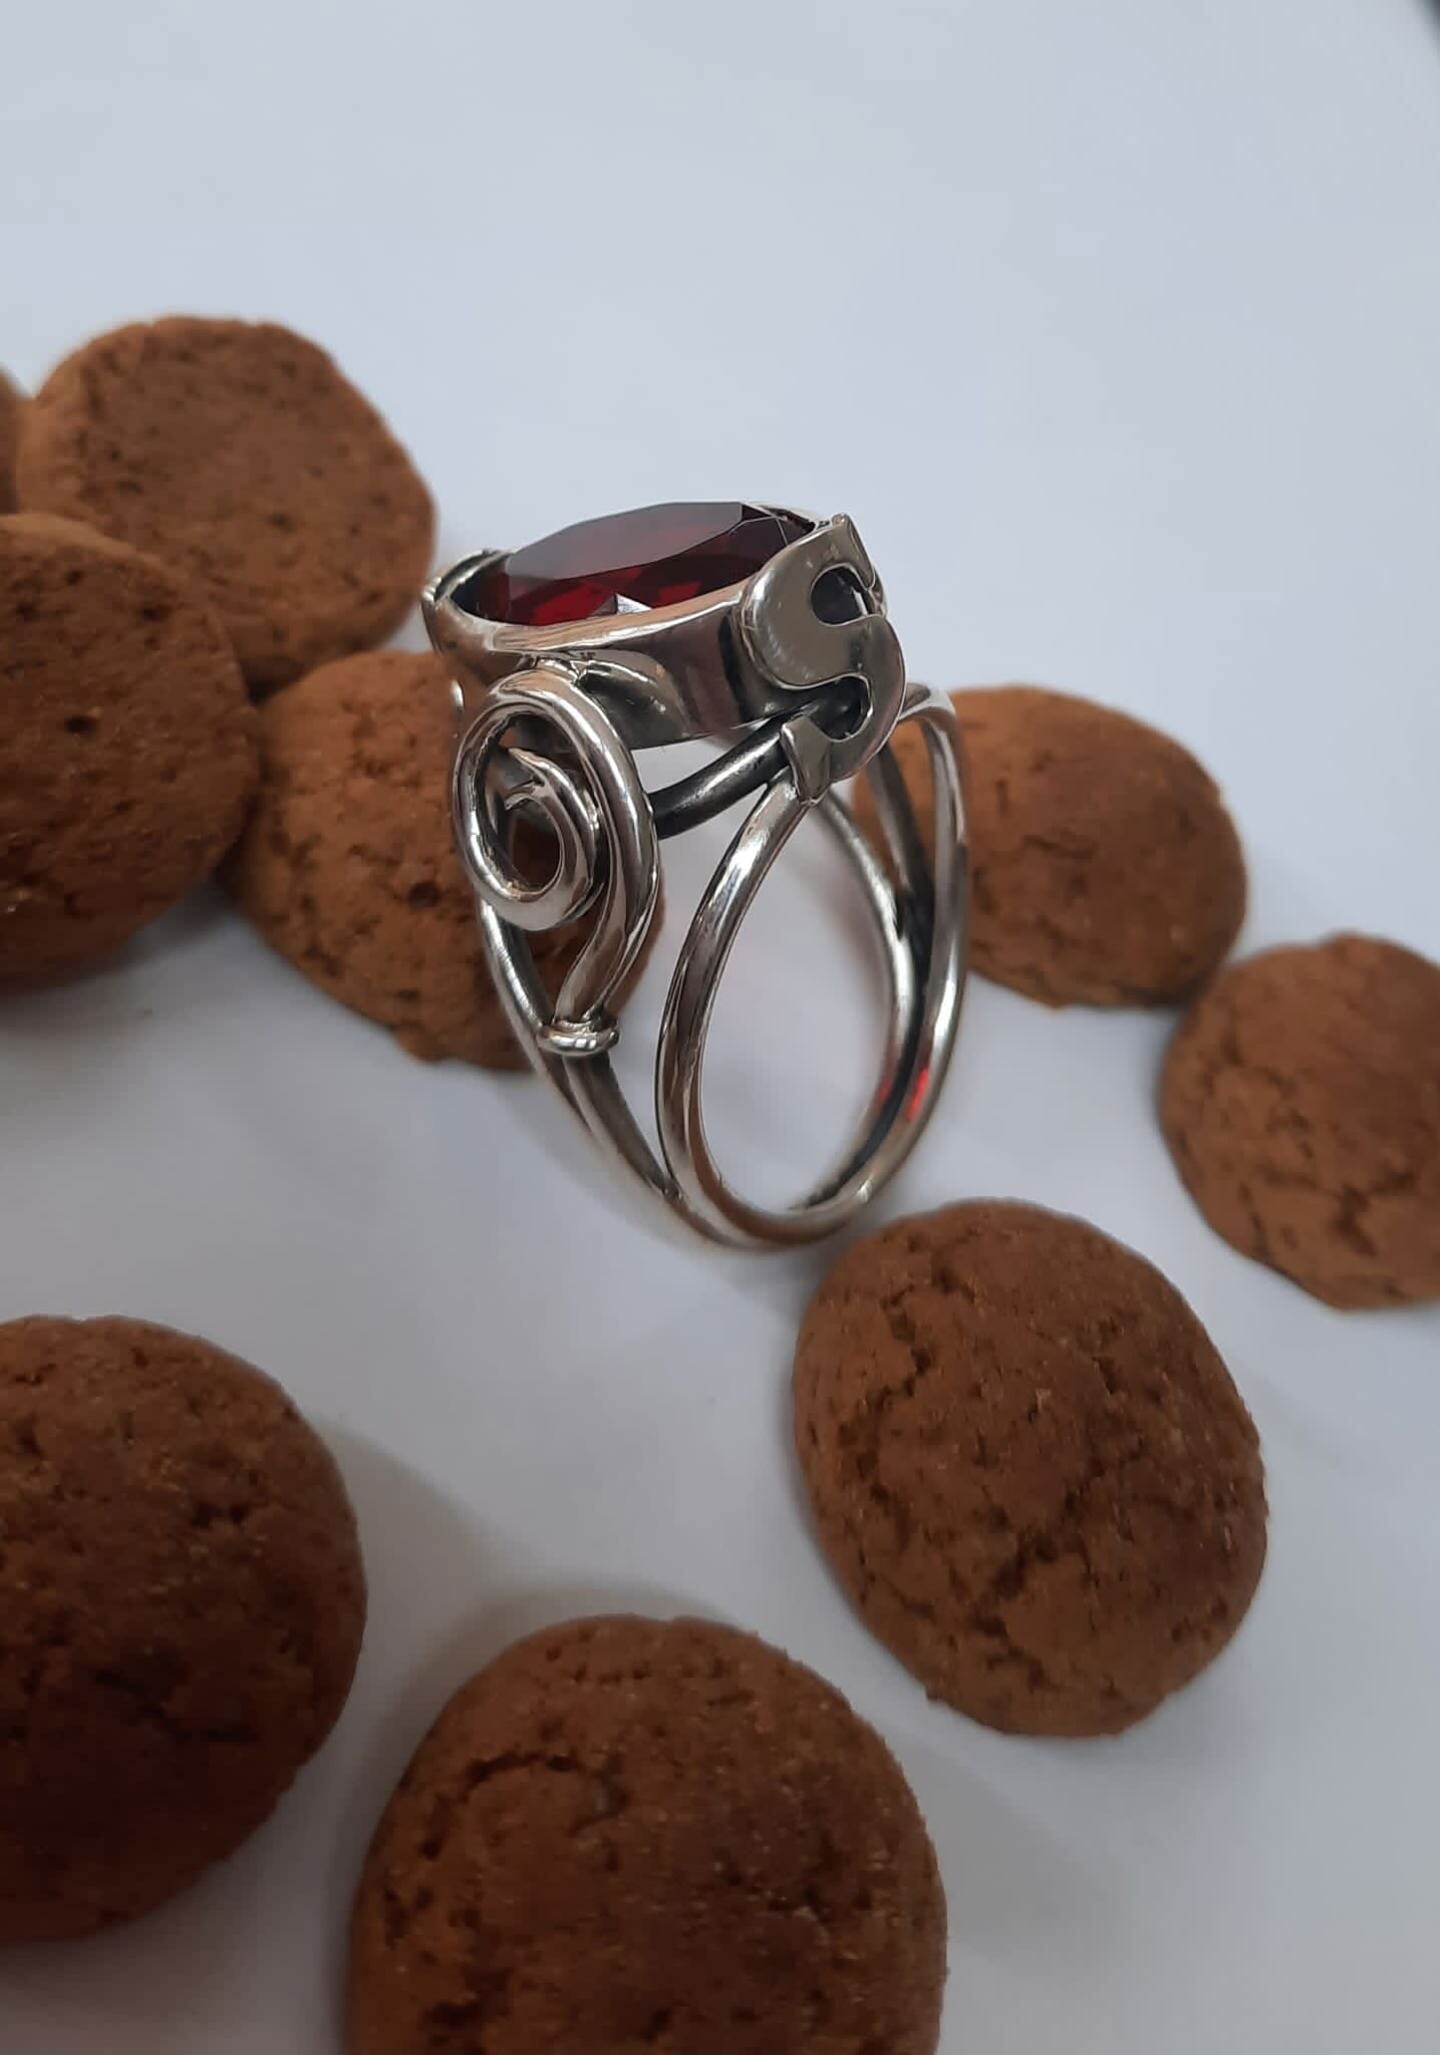 Daniëlle Bothof maakte zelf deze toepasselijk foto van een van de meest bijzondere ringen die ze ooit heeft gemaakt. 